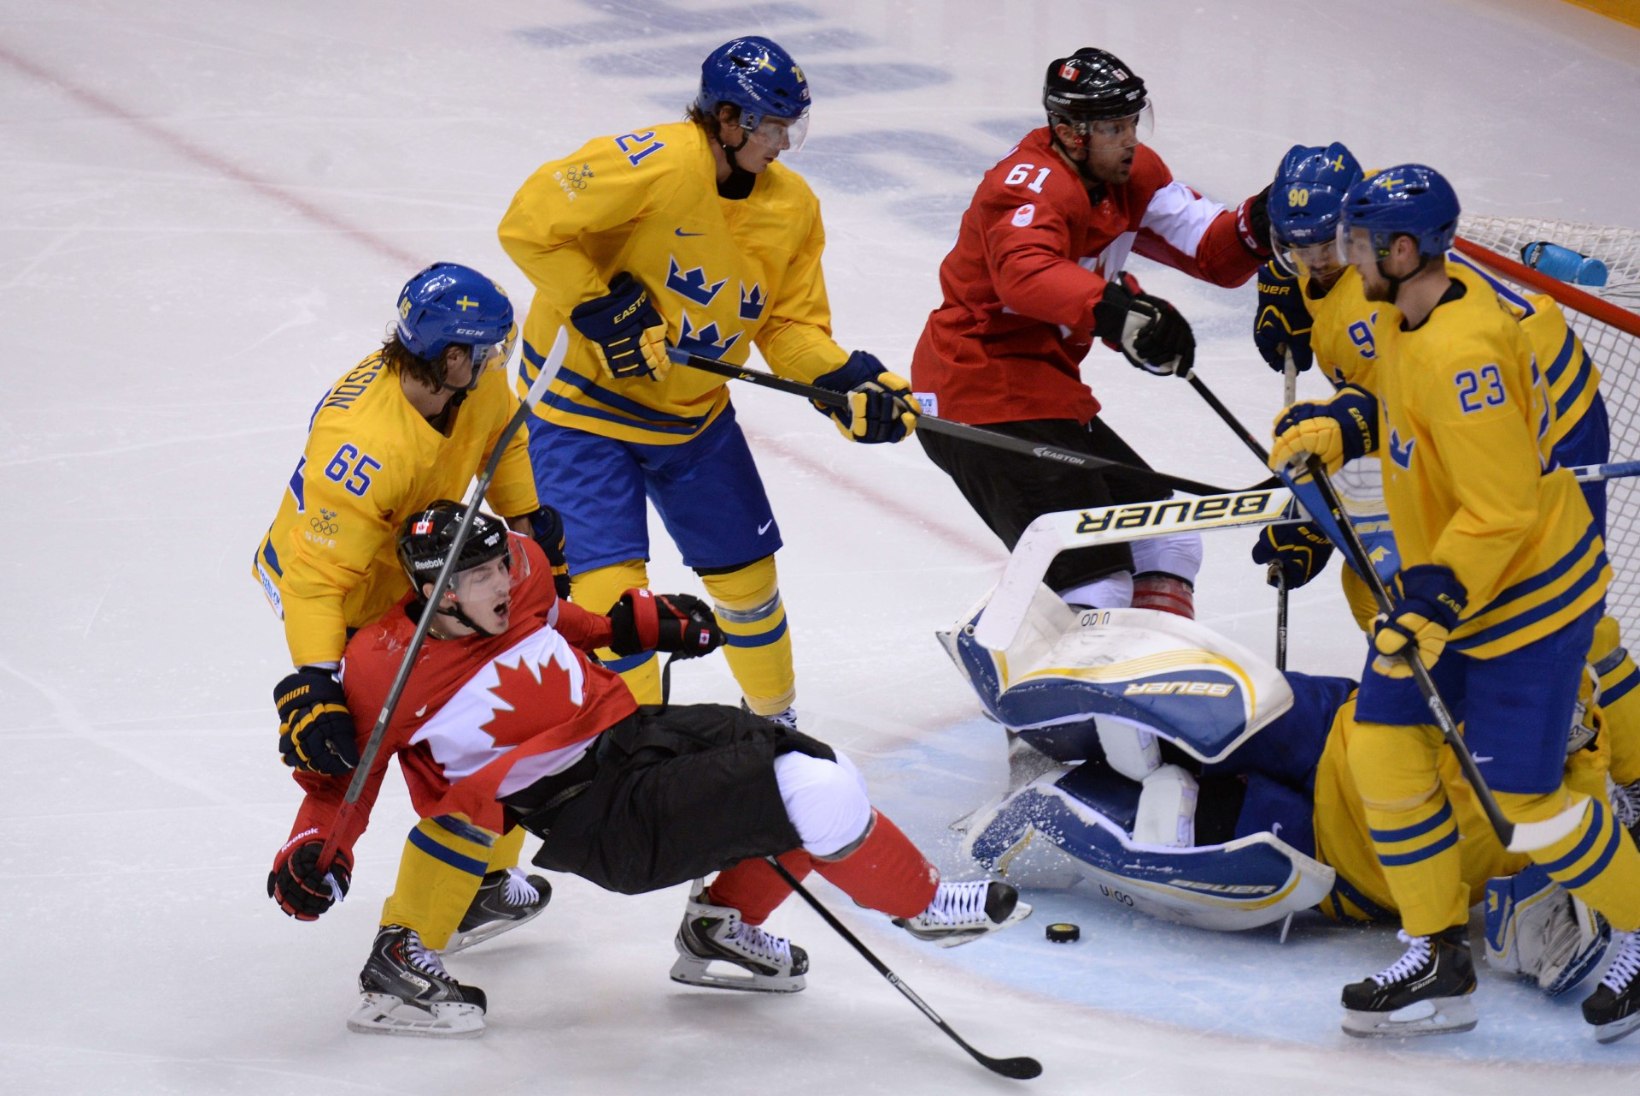 Rahvusvaheline hokiliit leidis raha NHL-i mängijate olümpiale saatmiseks. Kas liiga lubab staare minema?